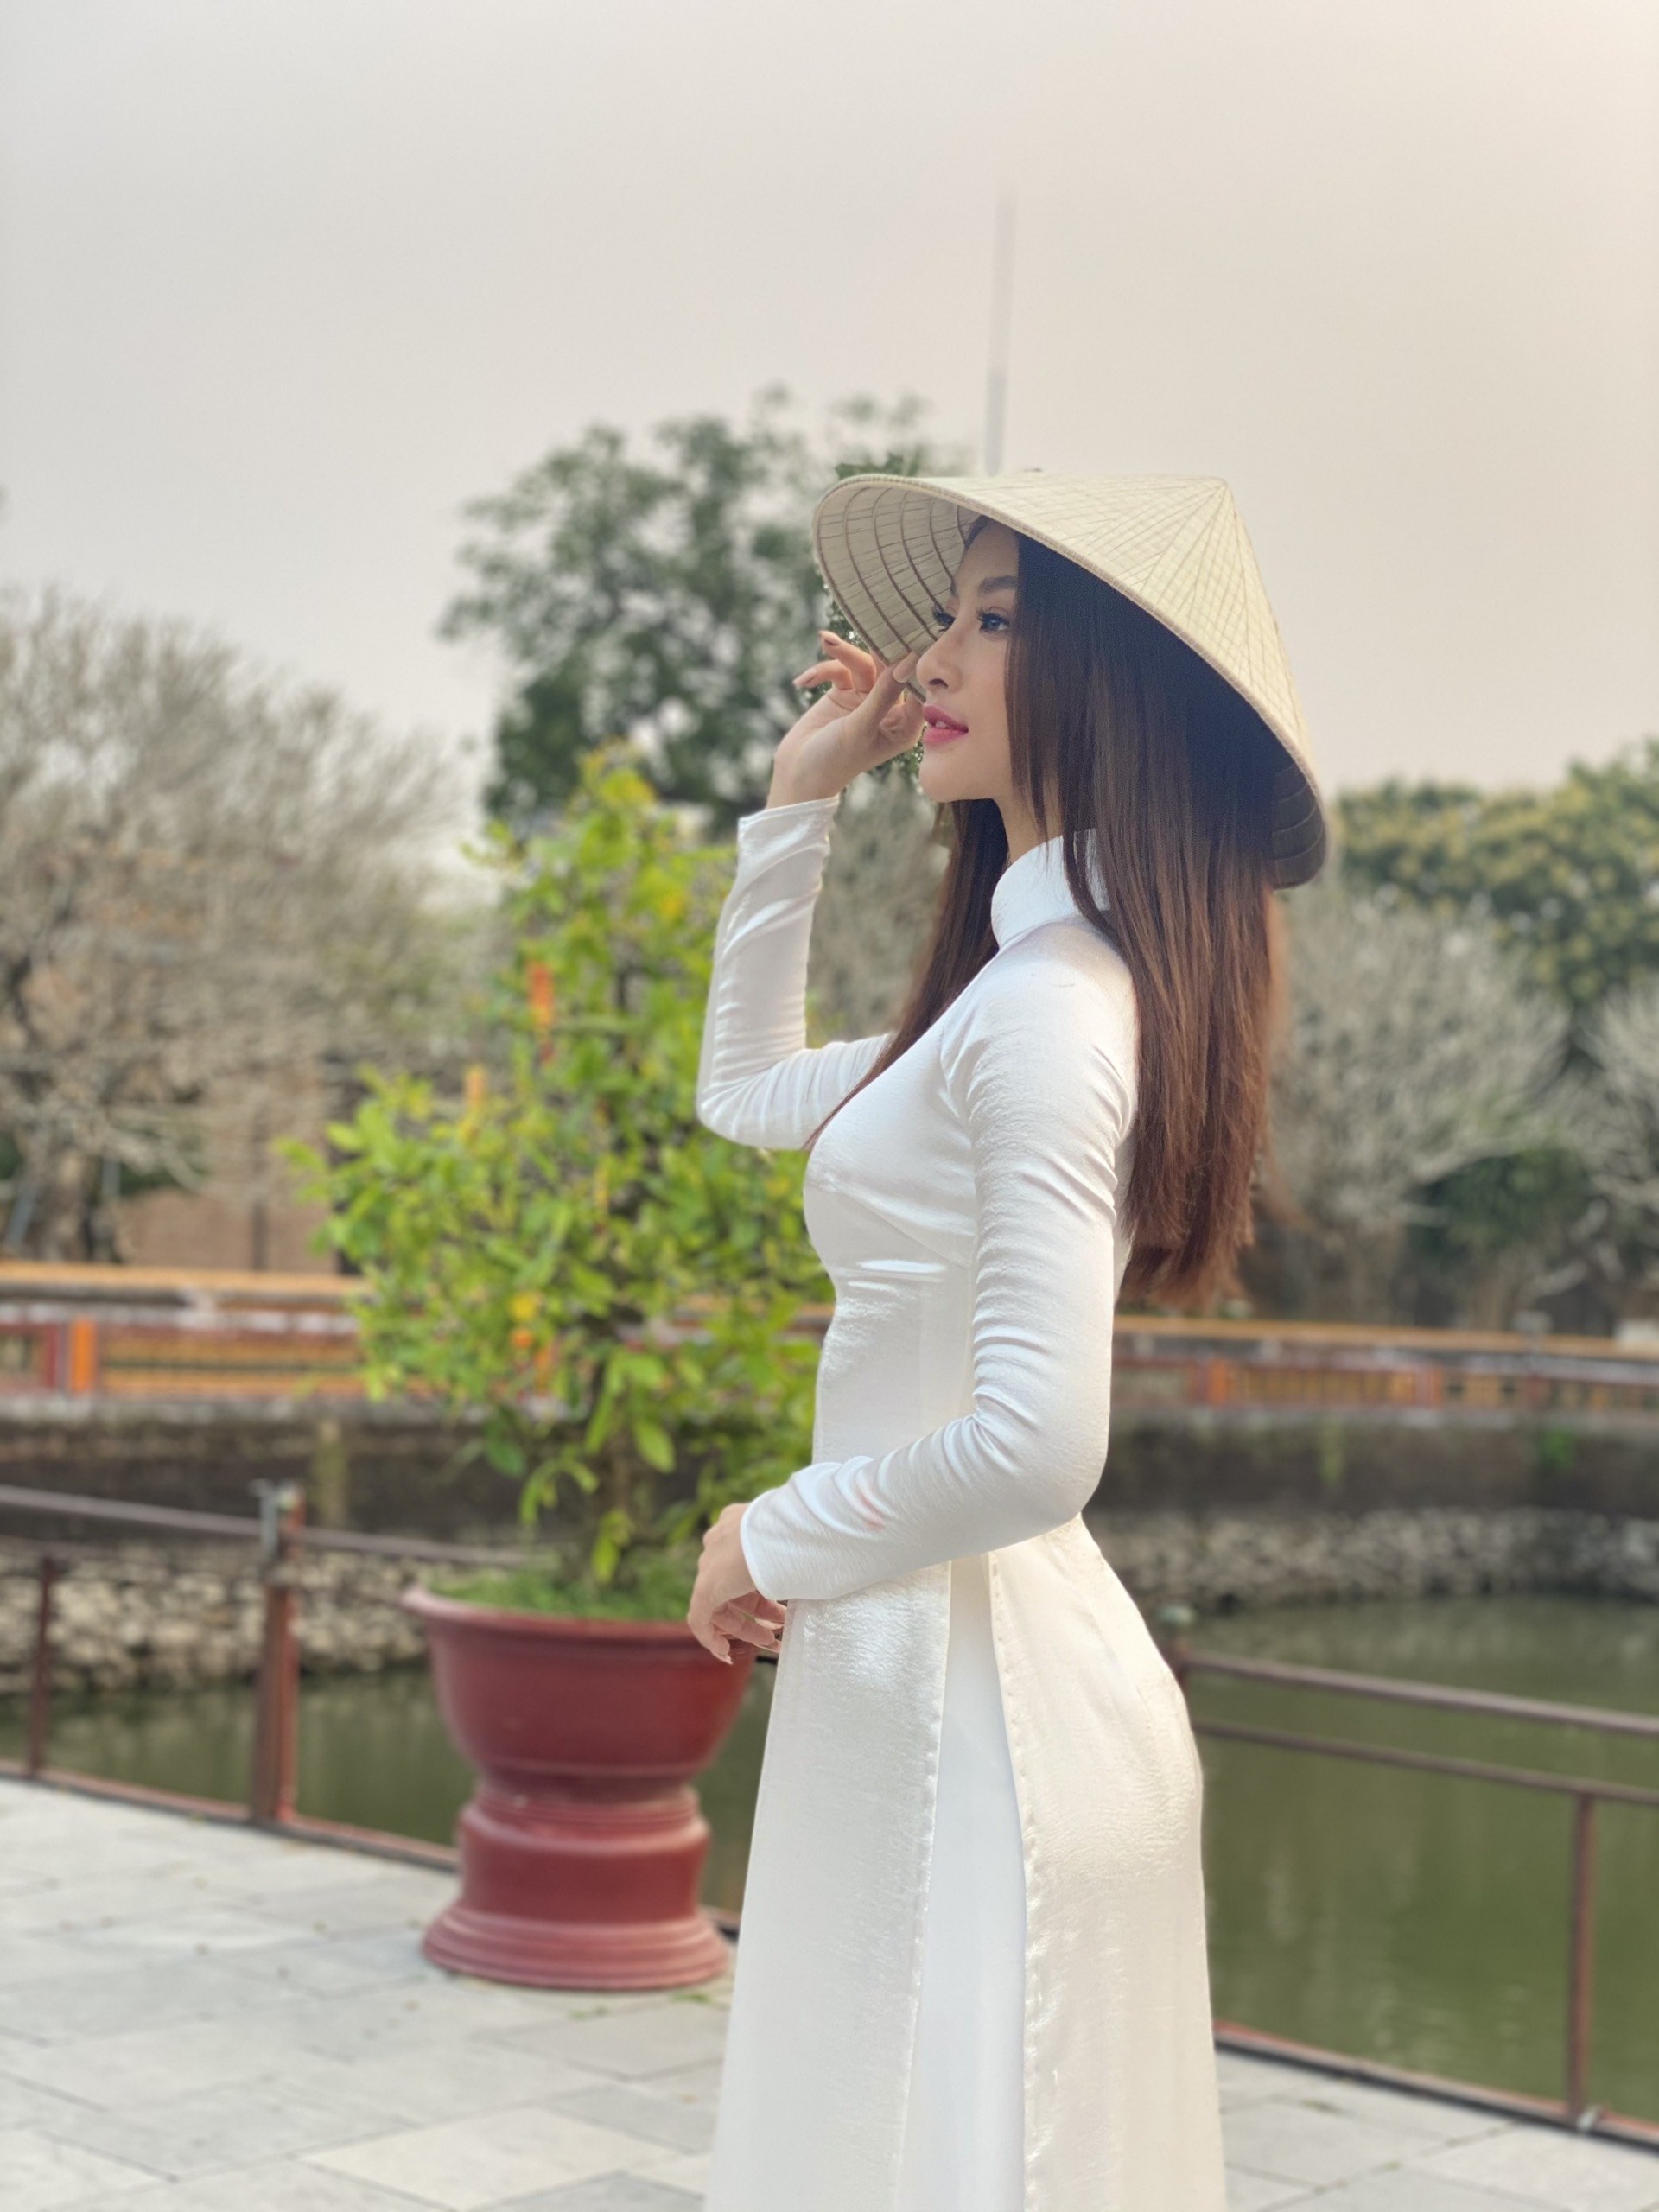 Lấy bối cảnh chùa Thiên Mụ, Á hậu Kiều Loan khéo léo diện áo dài trắng kín đáo, phù hợp với khung cảnh linh thiêng. Cô kết hợp biểu tượng truyền thống của Việt Nam và chiếc nón lá đặc trưng để mang đến hình ảnh thuần Việt.